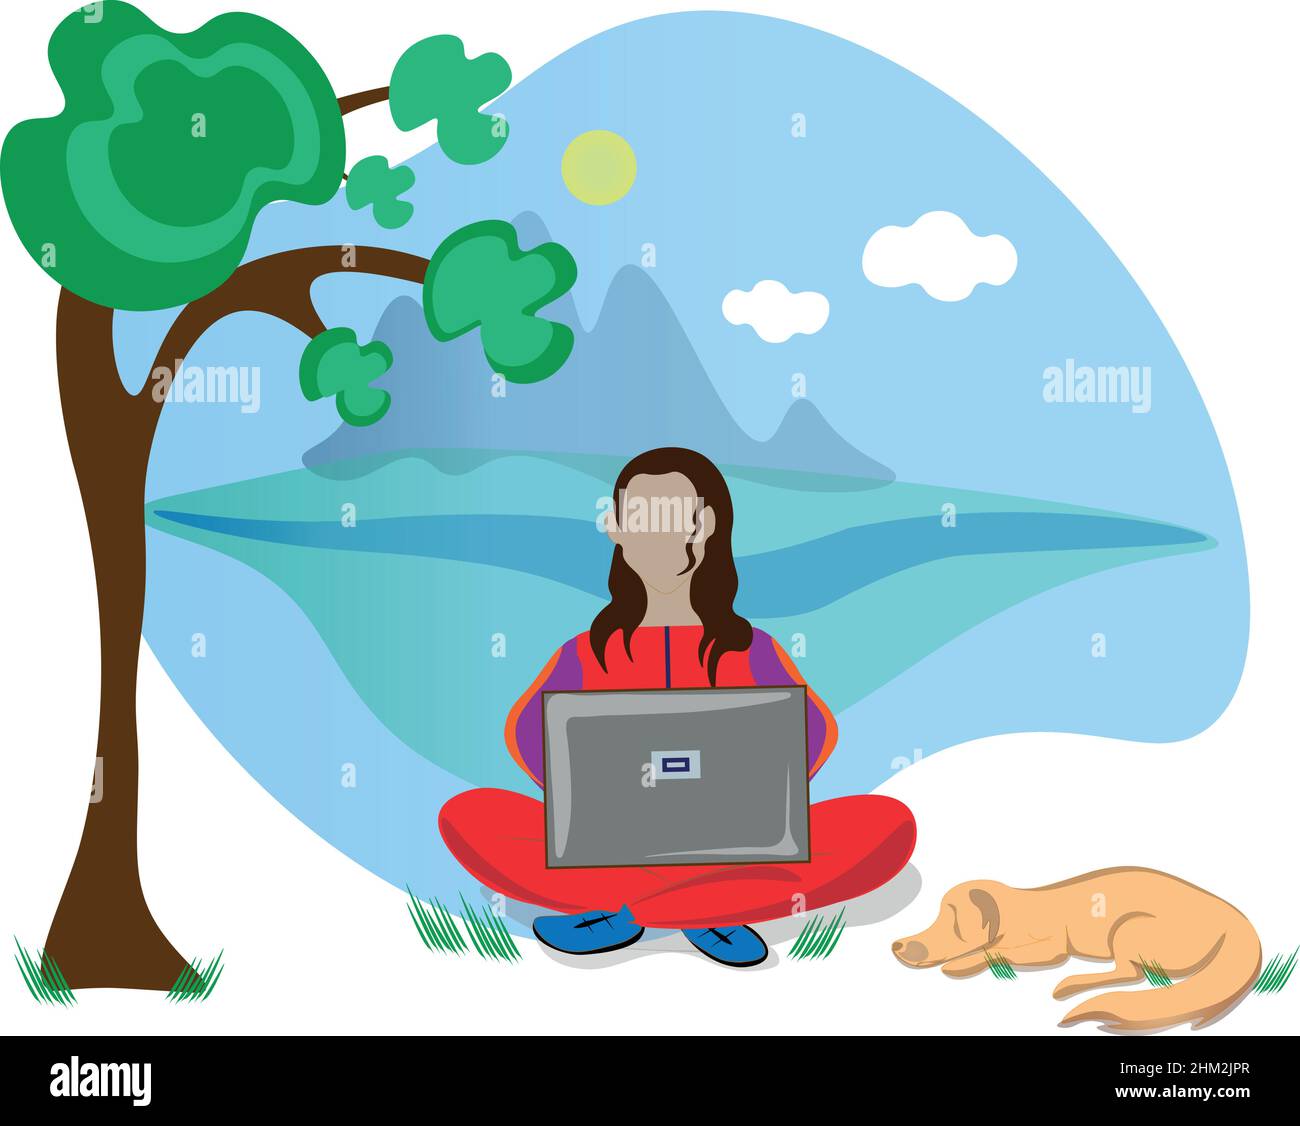 Bella illustrazione di una signora in una tuta seduta in natura lavorando su un computer portatile, il suo cane sta dormendo accanto a lei. Vettore Illustrazione Vettoriale